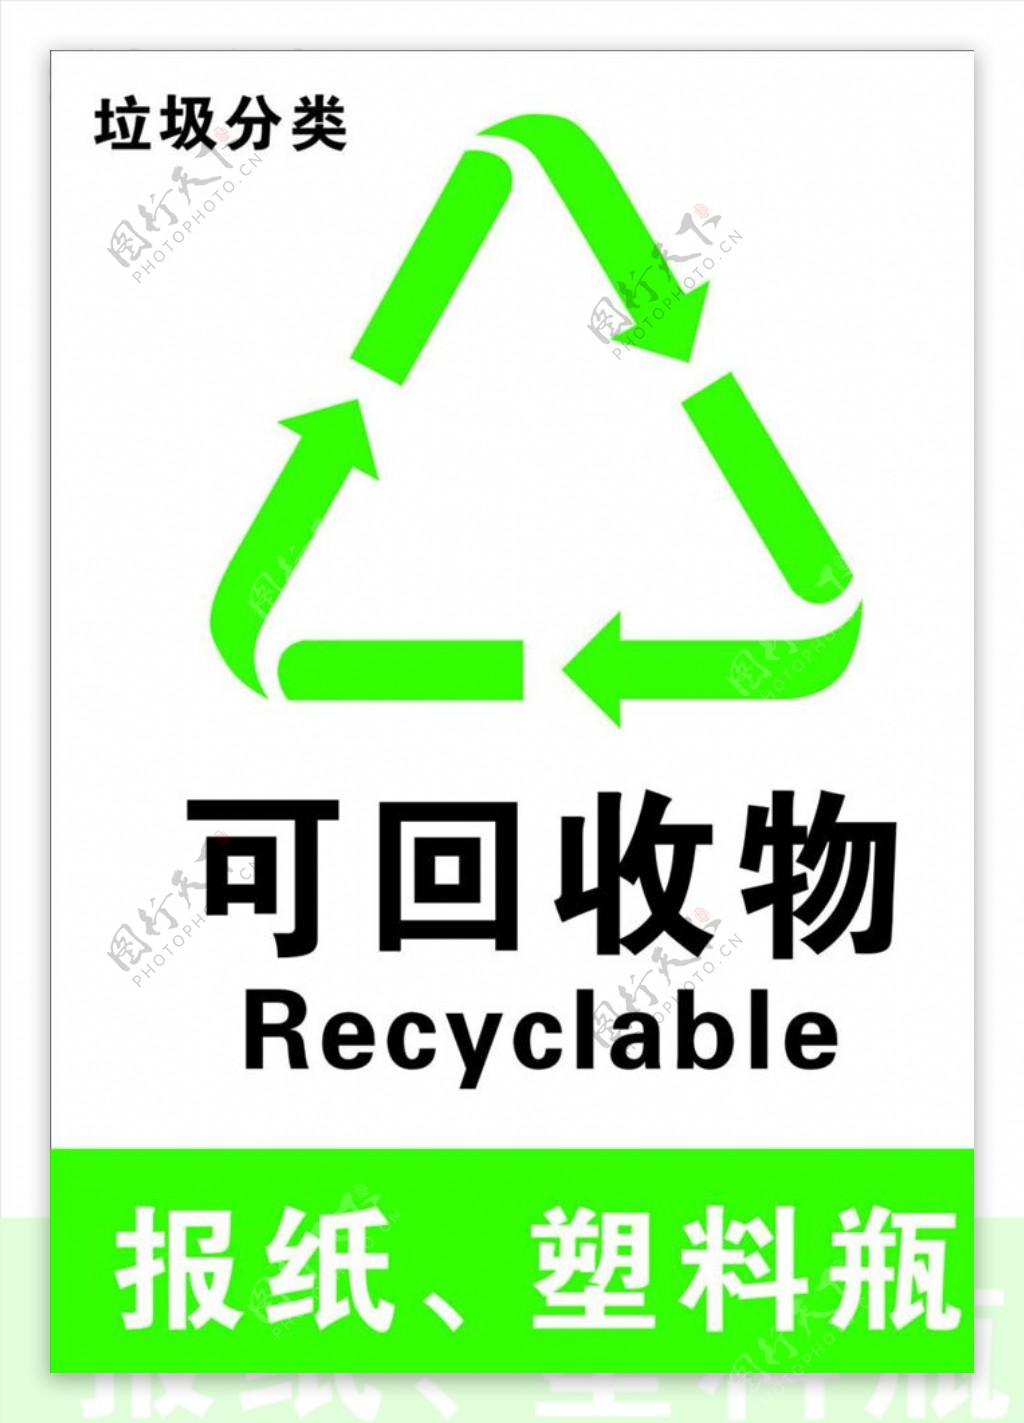 环保垃圾分类宣传活动模板源文件